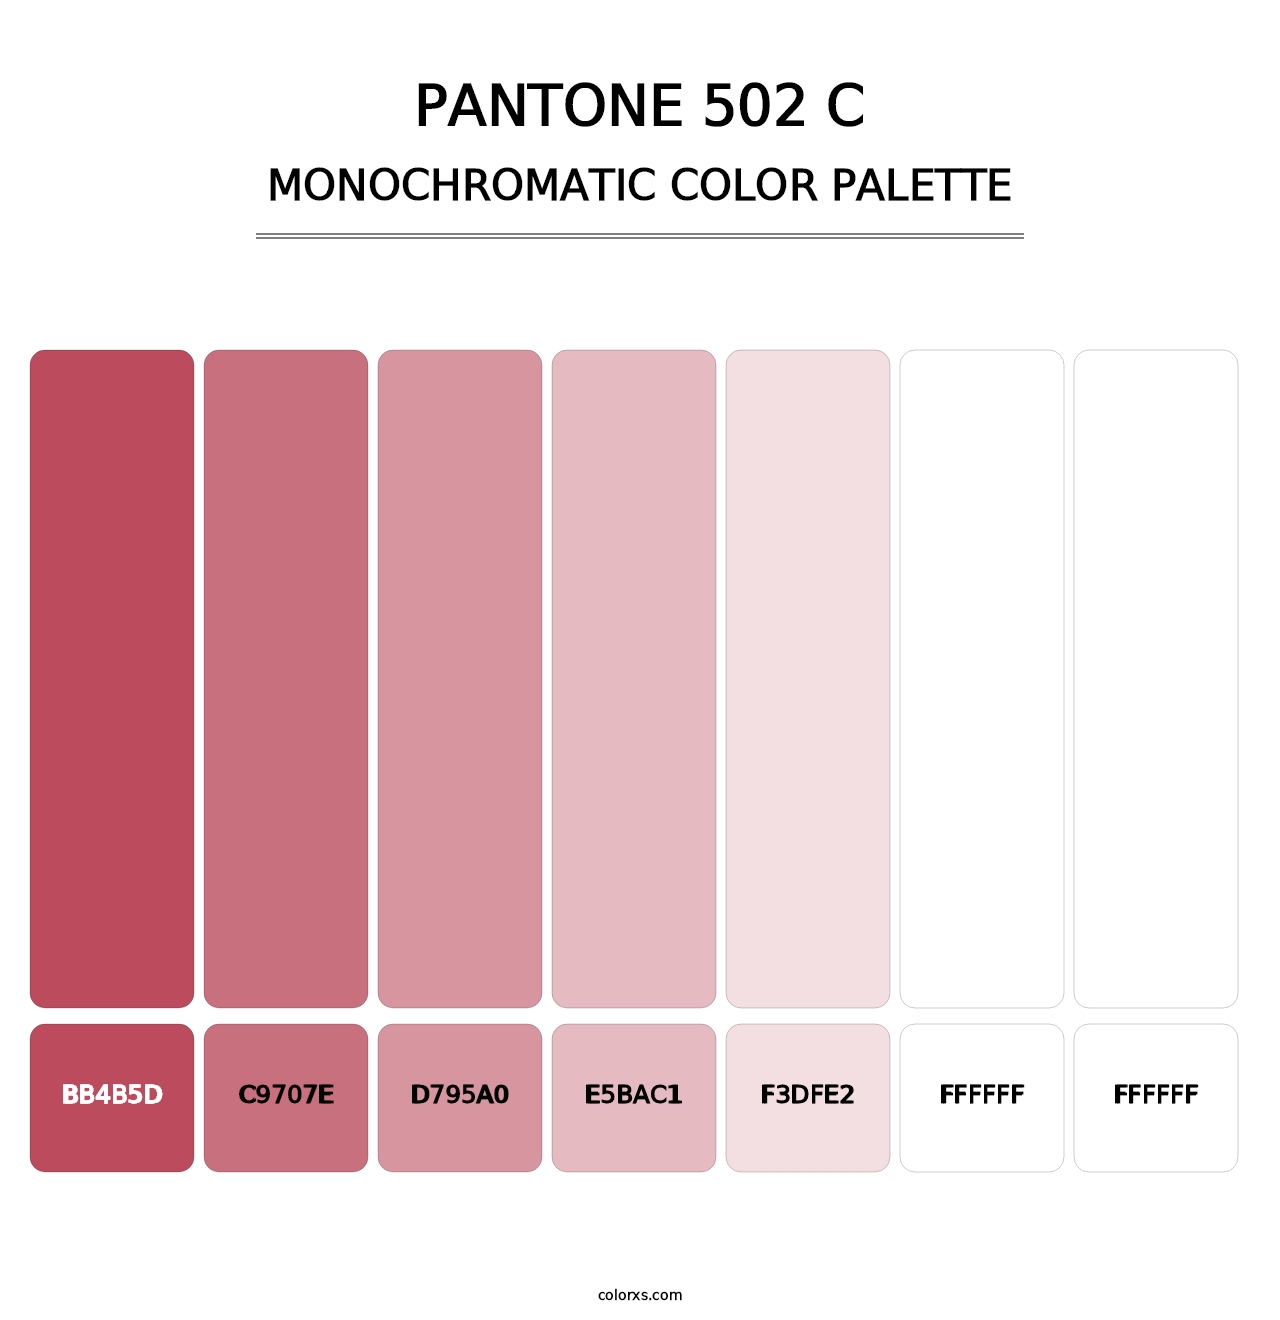 PANTONE 502 C - Monochromatic Color Palette